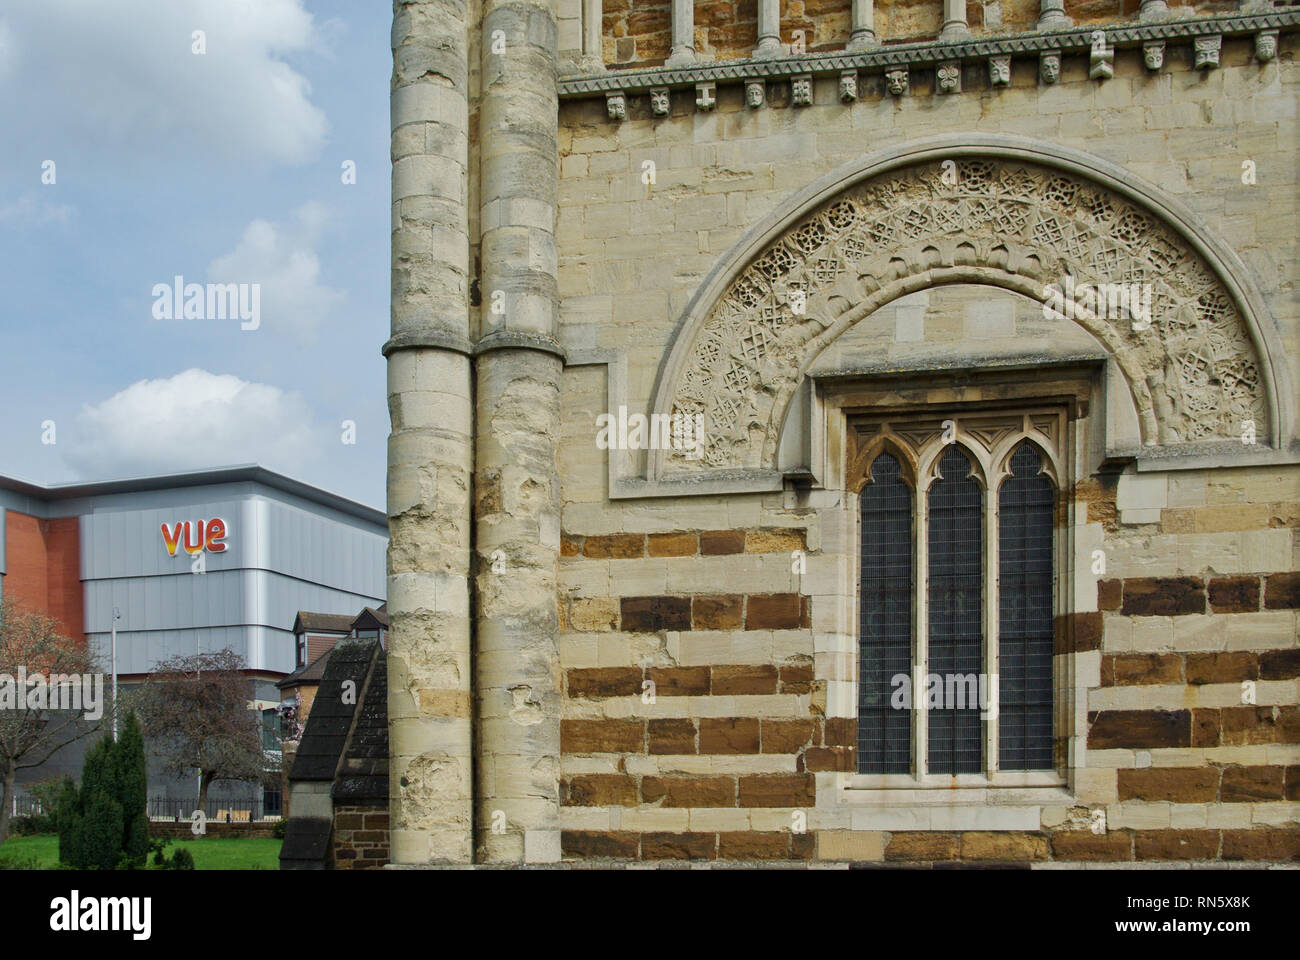 Alte und Moderne, die normannische Turm von St. Petri Kirche und im Hintergrund die Fassade des Vue Cinema; Northampton, Northamptonshire, Großbritannien Stockfoto